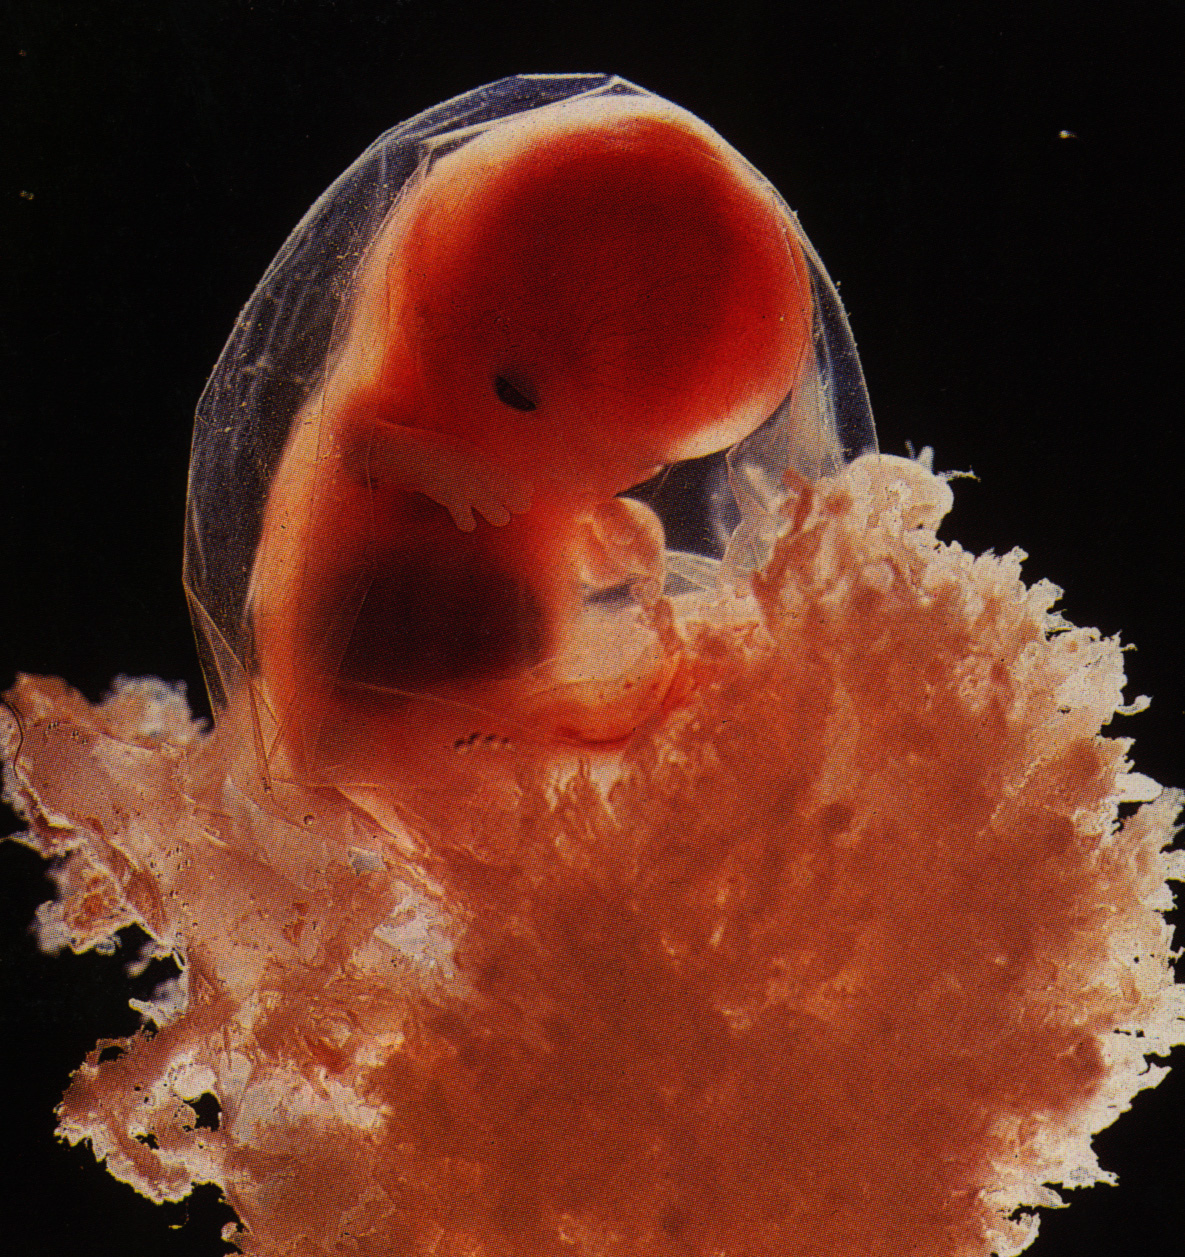 Что происходит на 3 неделе. Эмбрион на 4 эмбриональной неделе беременности. Зародыш 3-4 недели беременности. Юбрион в 4 недели беременности. Эмбрион человека 3 недели беременности.